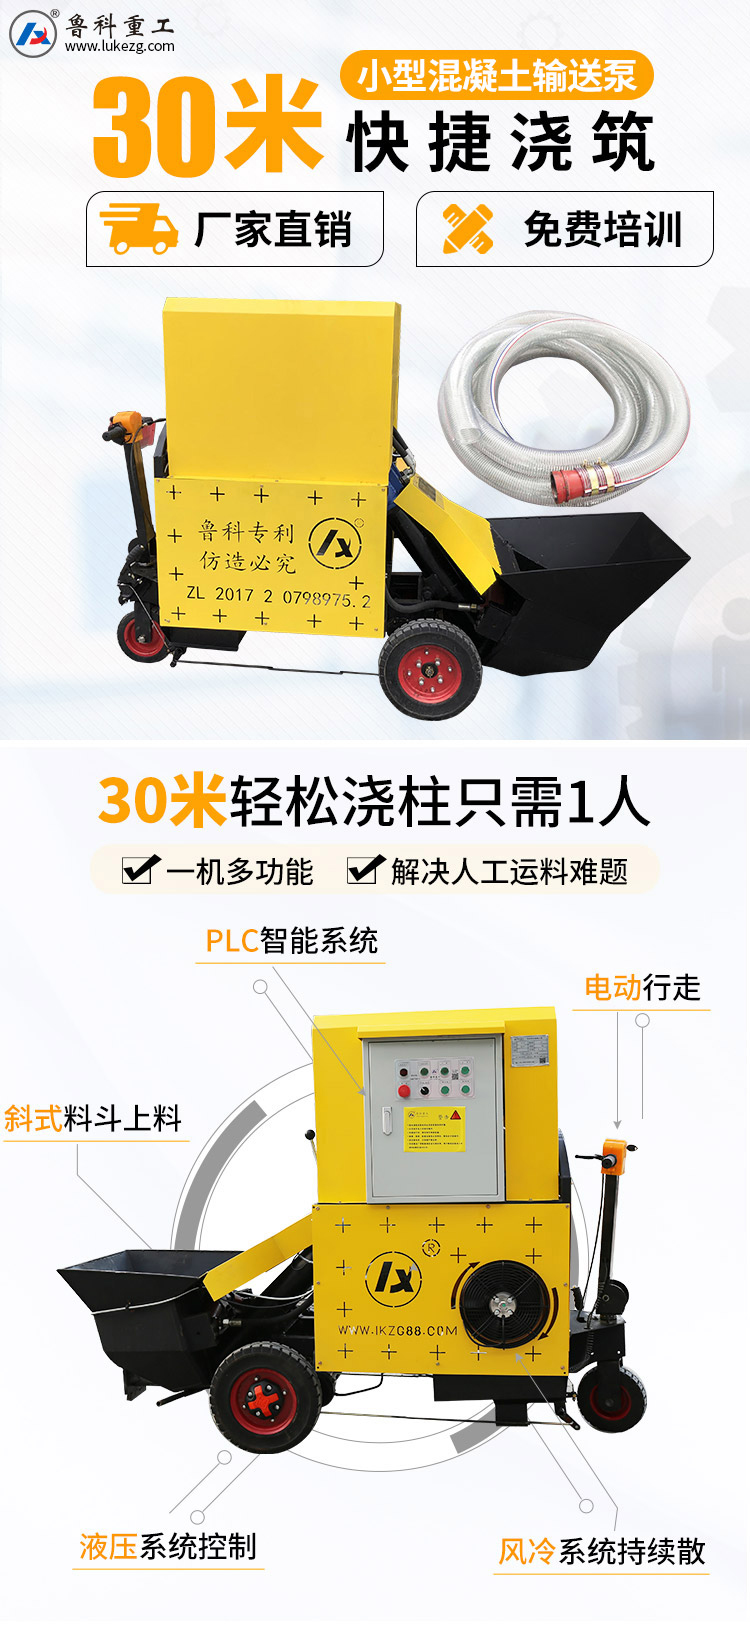 上海产小型电动注浆泵.jpg